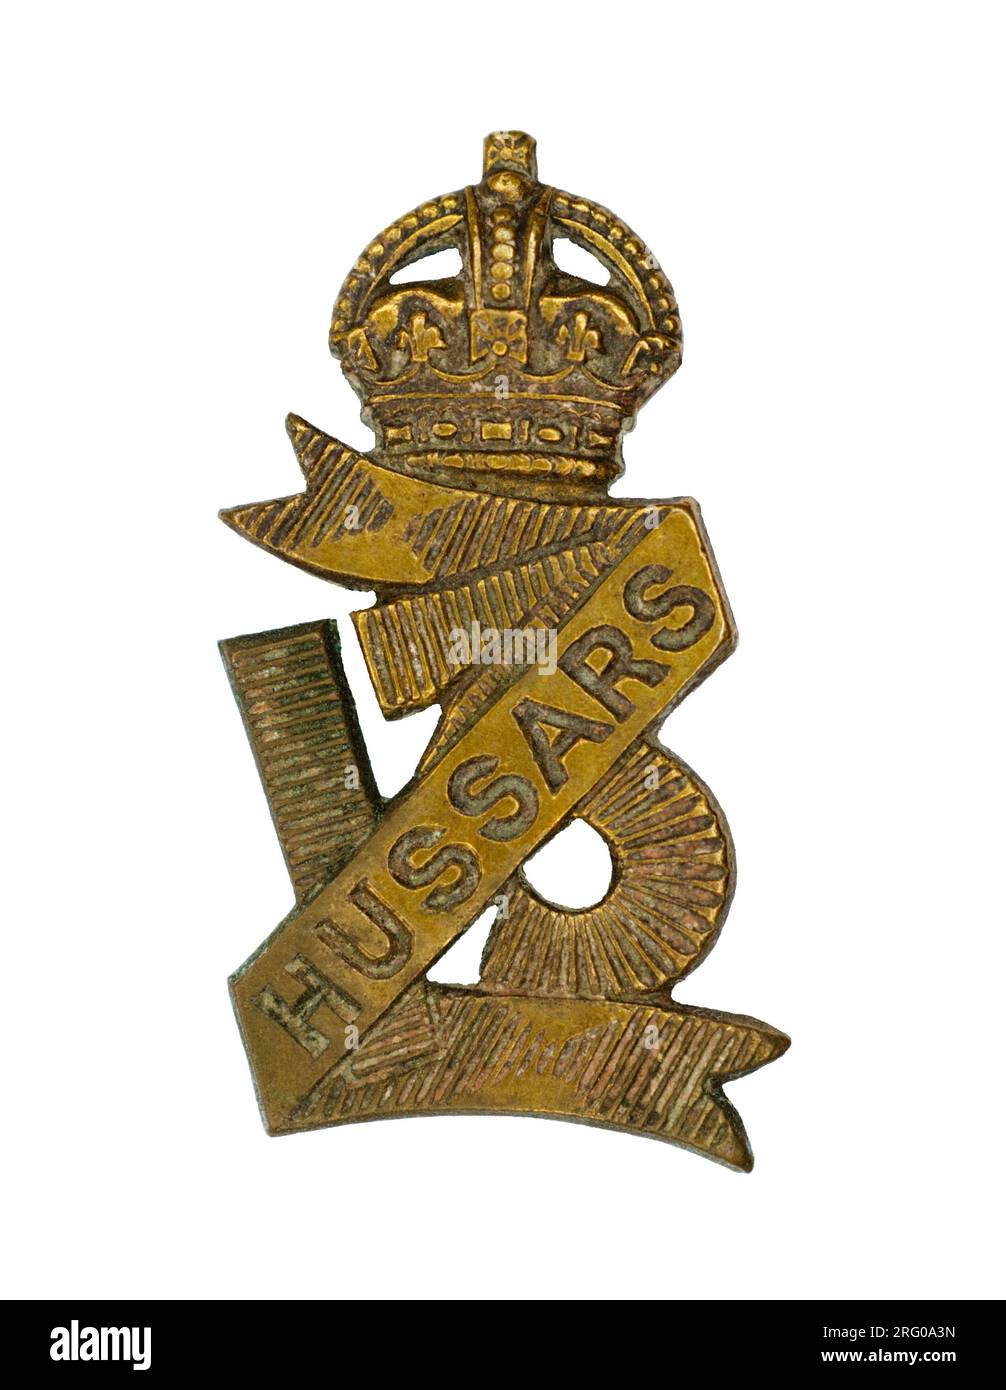 Il distintivo del 13th Hussars, c. 1900-1922. Foto Stock